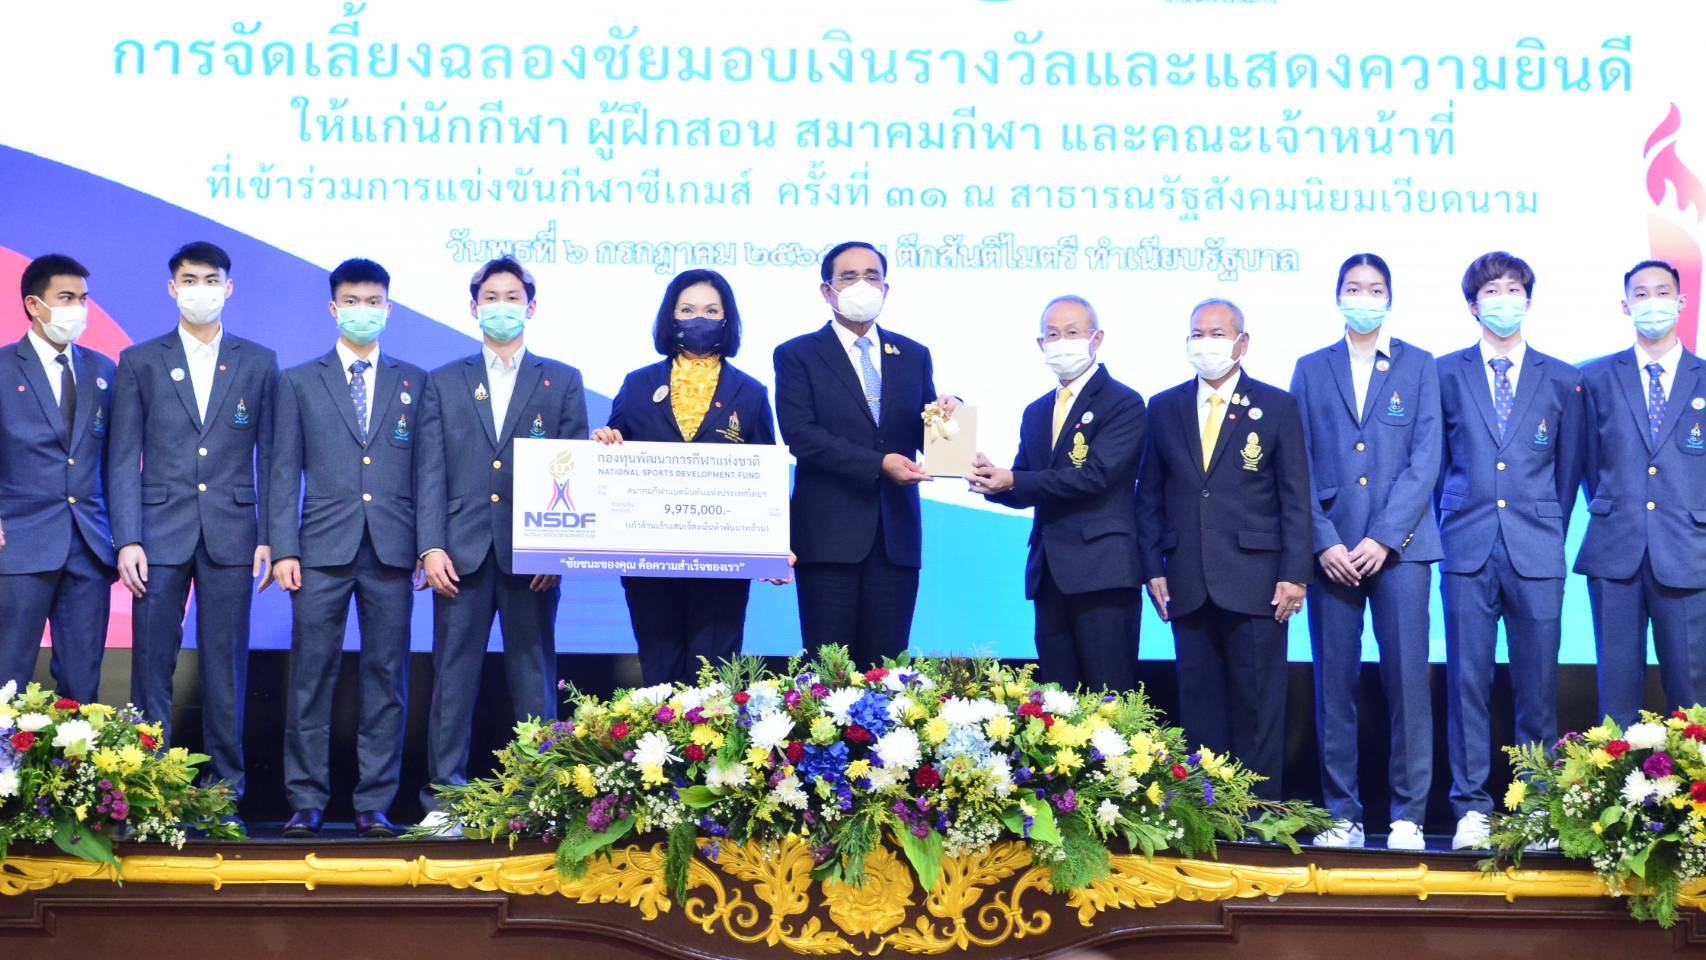 สมาคมกีฬาแบดมินตันแห่งประเทศไทยฯ รับเงินรางวัลจากนายกรัฐมนตรี ในงานเลี้ยงฉลองชัย ที่ทำเนียบรัฐบาล